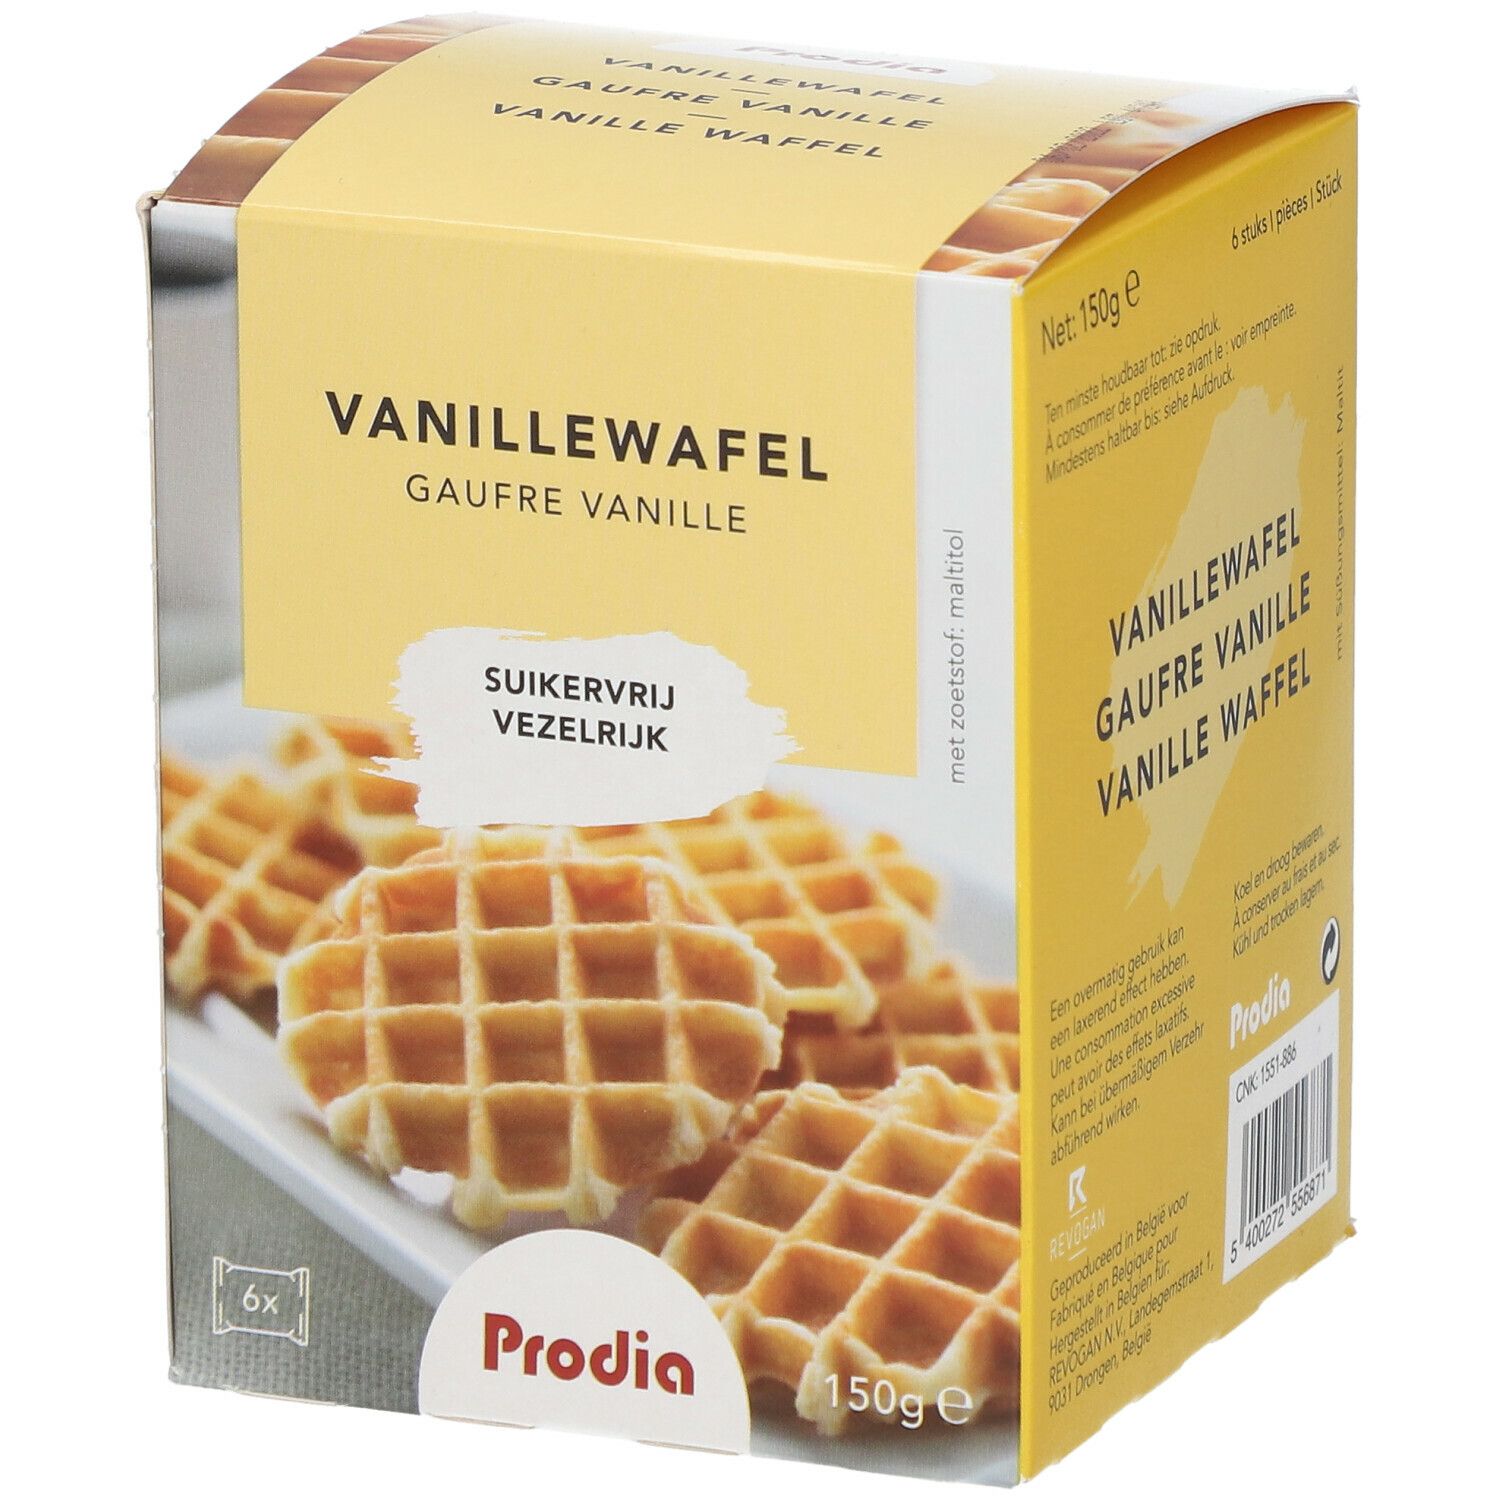 Prodia Waffles Vaniglia